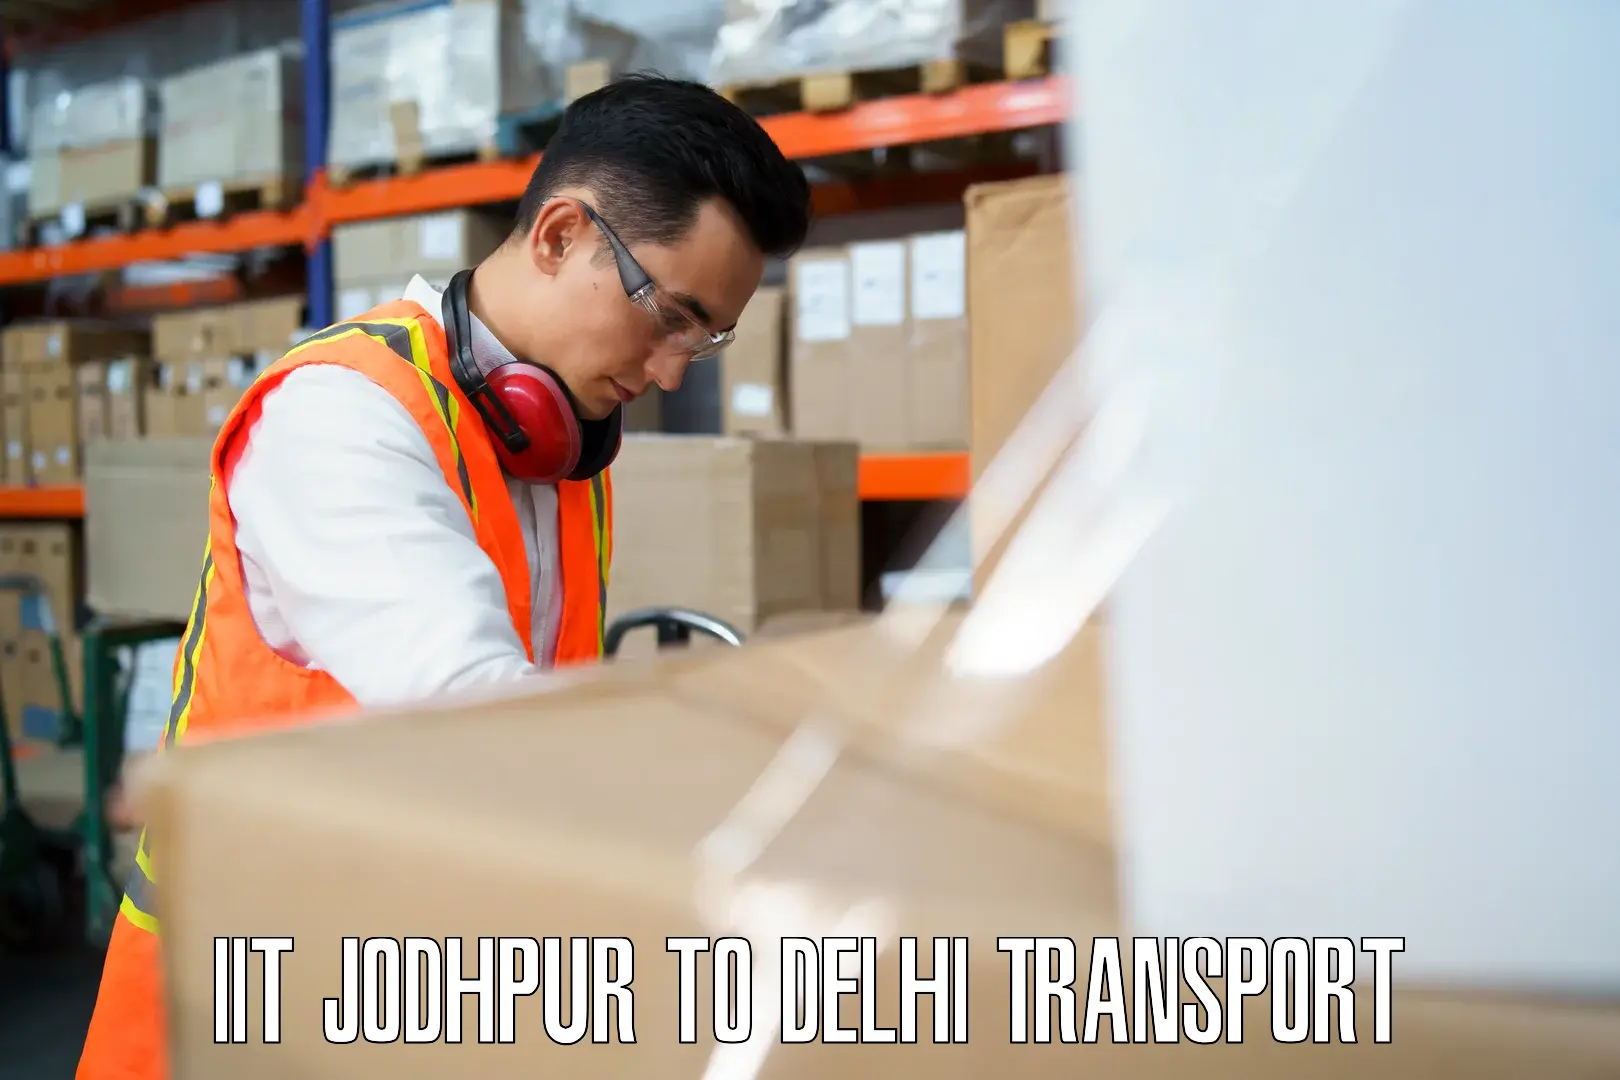 Vehicle courier services IIT Jodhpur to Kalkaji